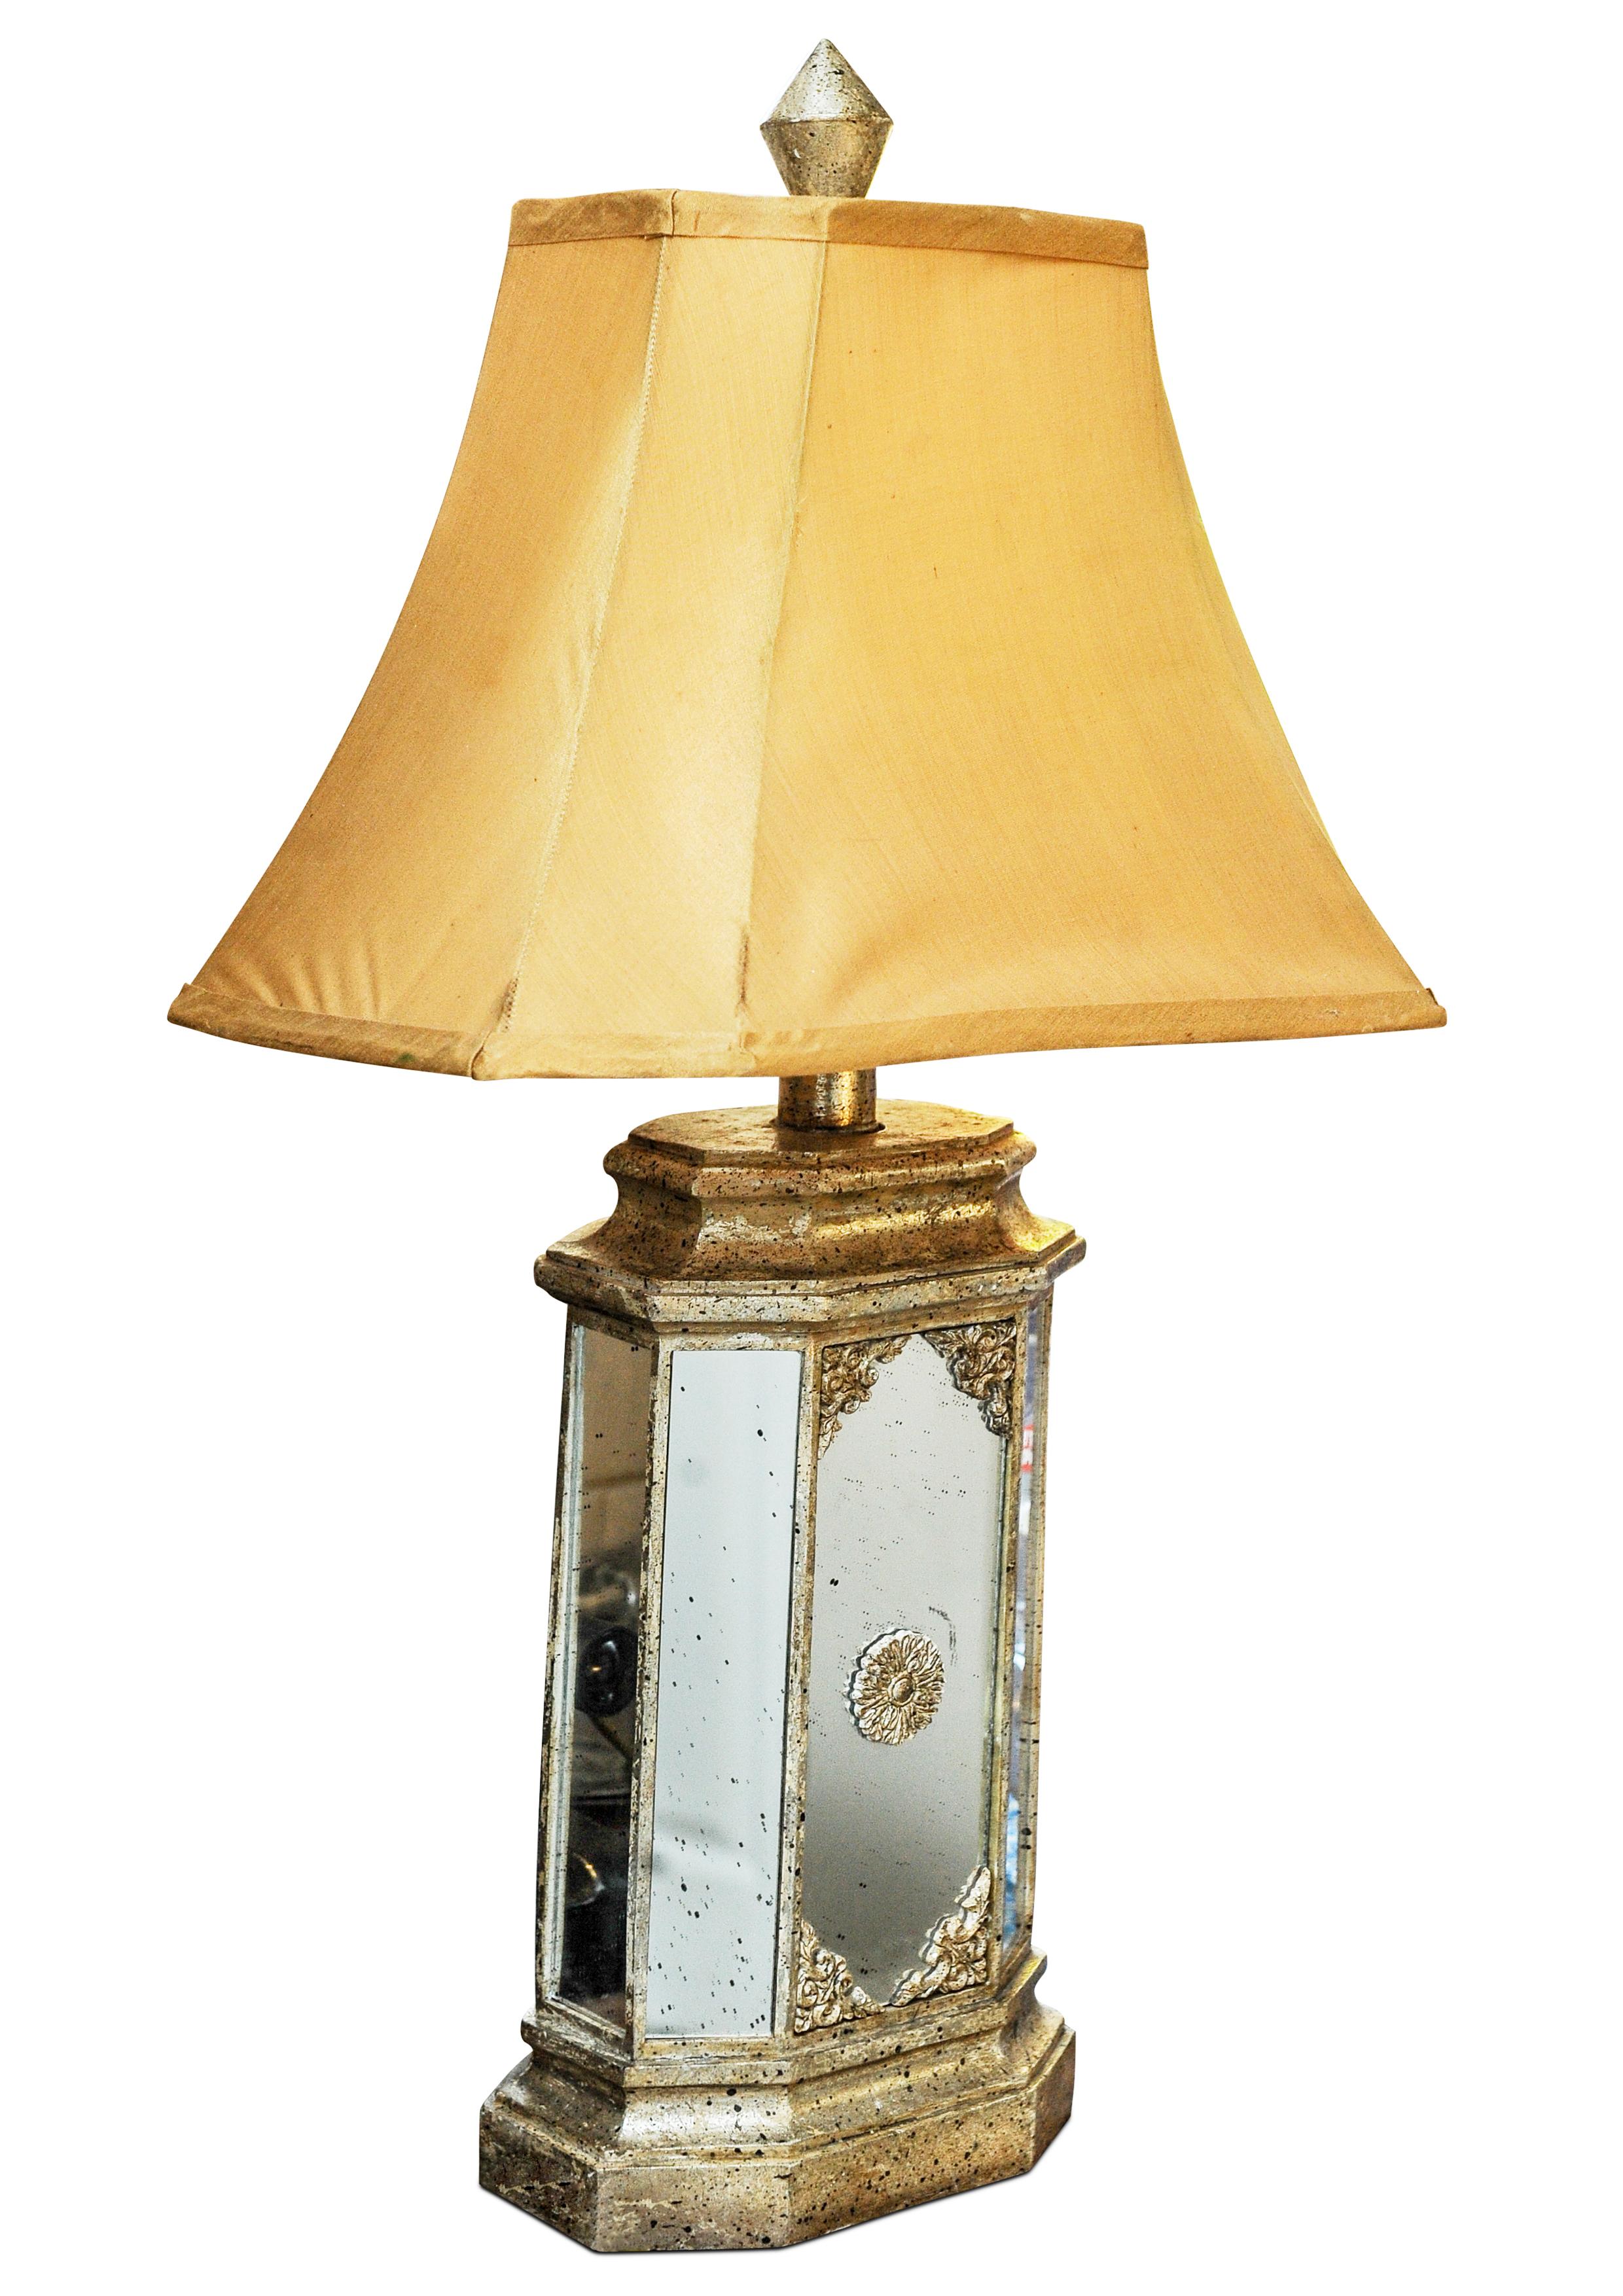 Lampe de table opulente en miroir avec abat-jour en soie, design Hollywood Regency, équipée d'une prise à trois broches au Royaume-Uni 


Hauteur au sommet de la lampe : 60cm
Largeur de la base de la lampe : 20,5 cm 
Profondeur de la base de la